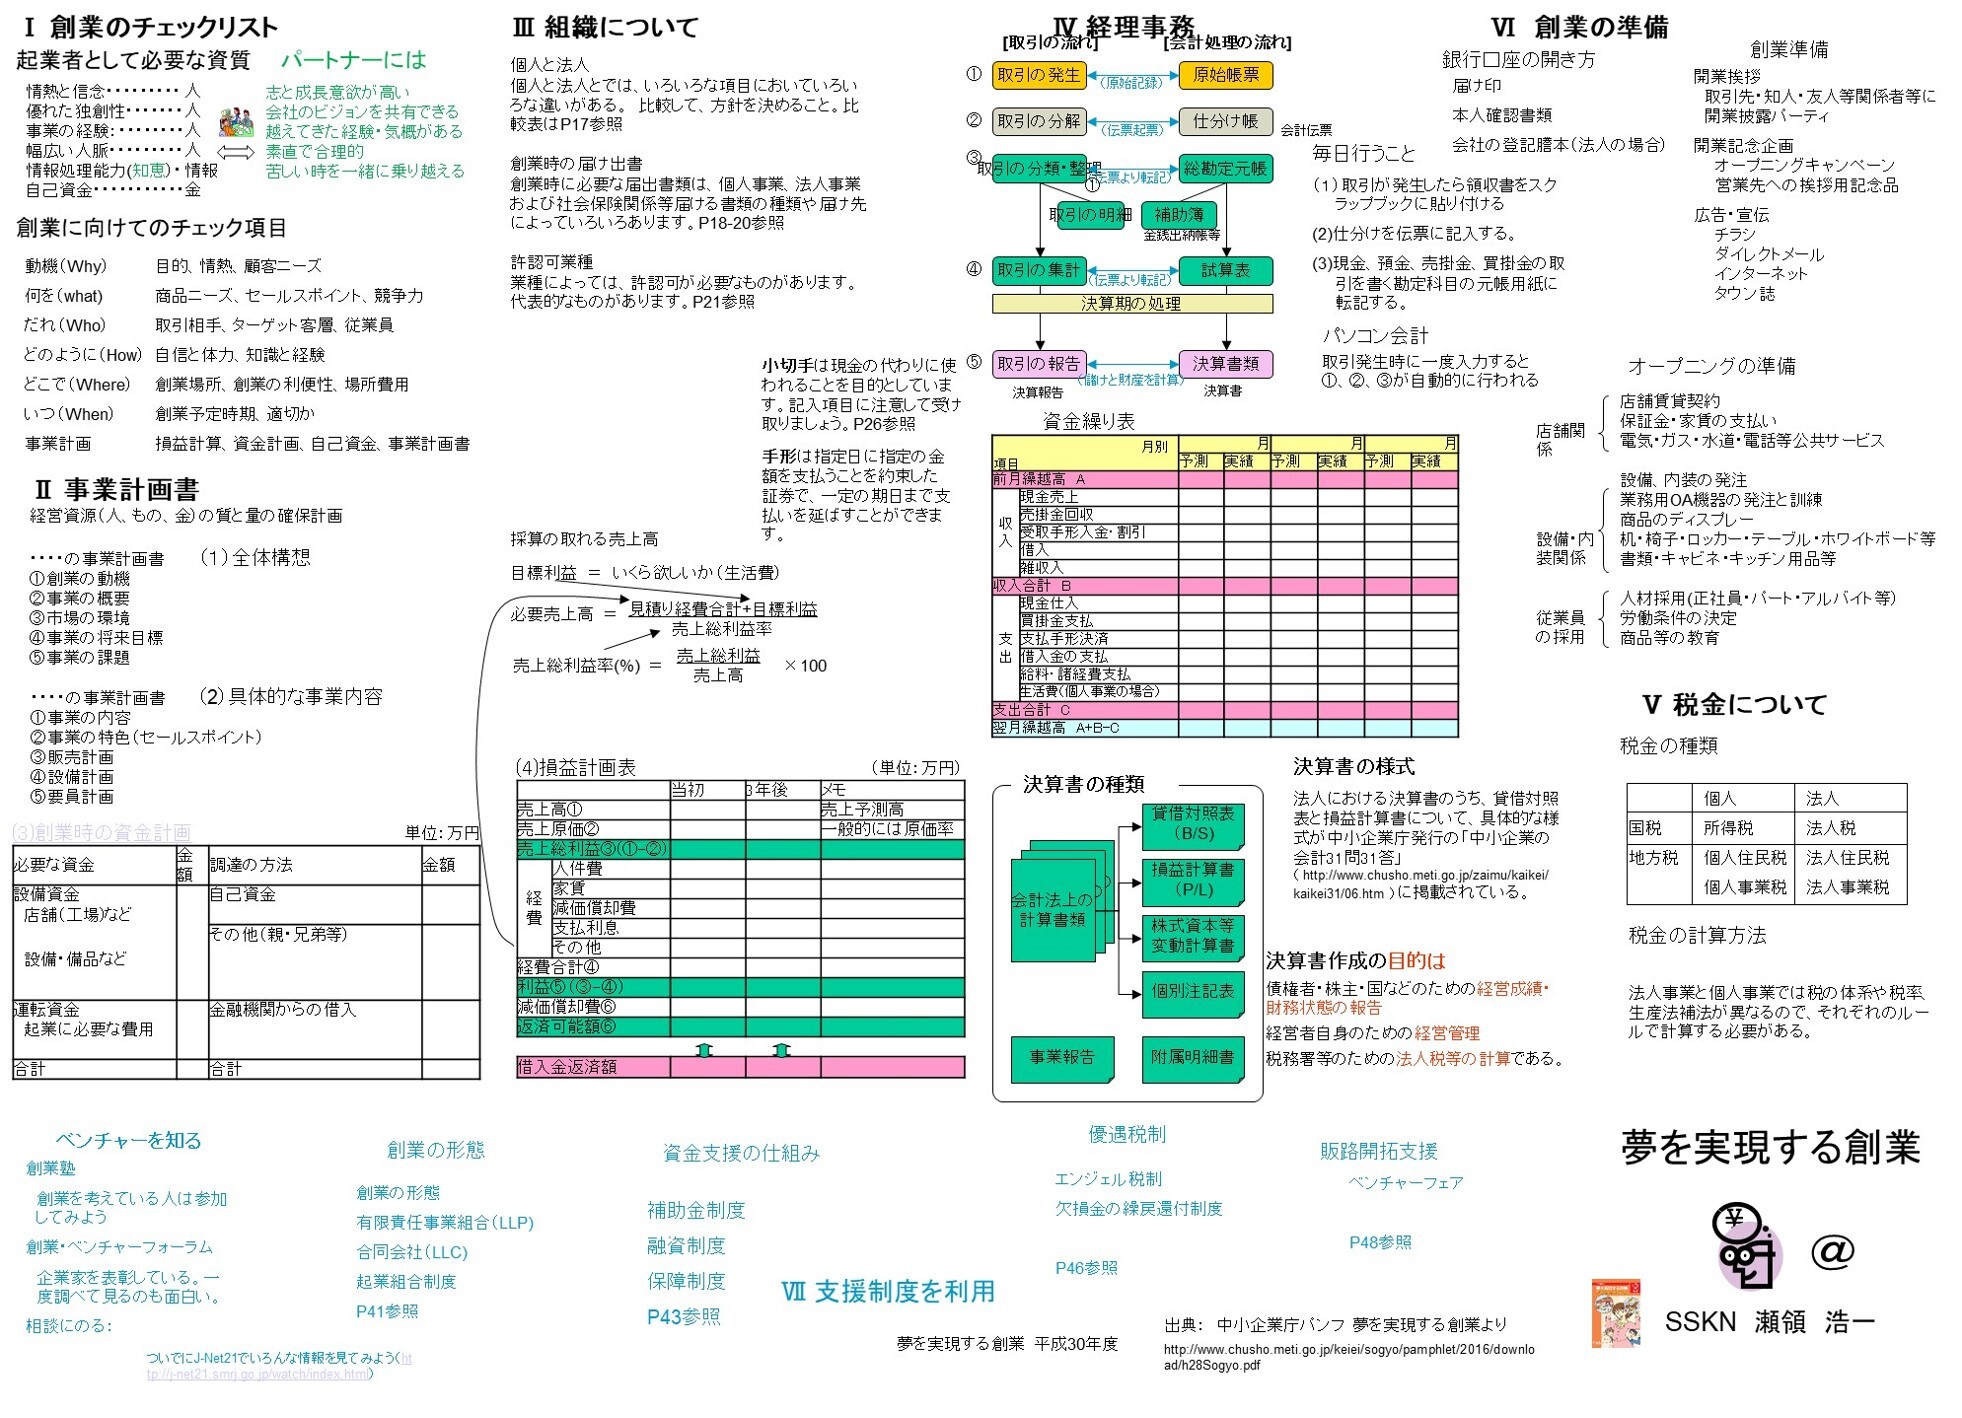 https://o-fsi.w3.kanazawa-u.ac.jp/about/vbl/vbl6/vbl/update/vbl-kigyo101.jpg